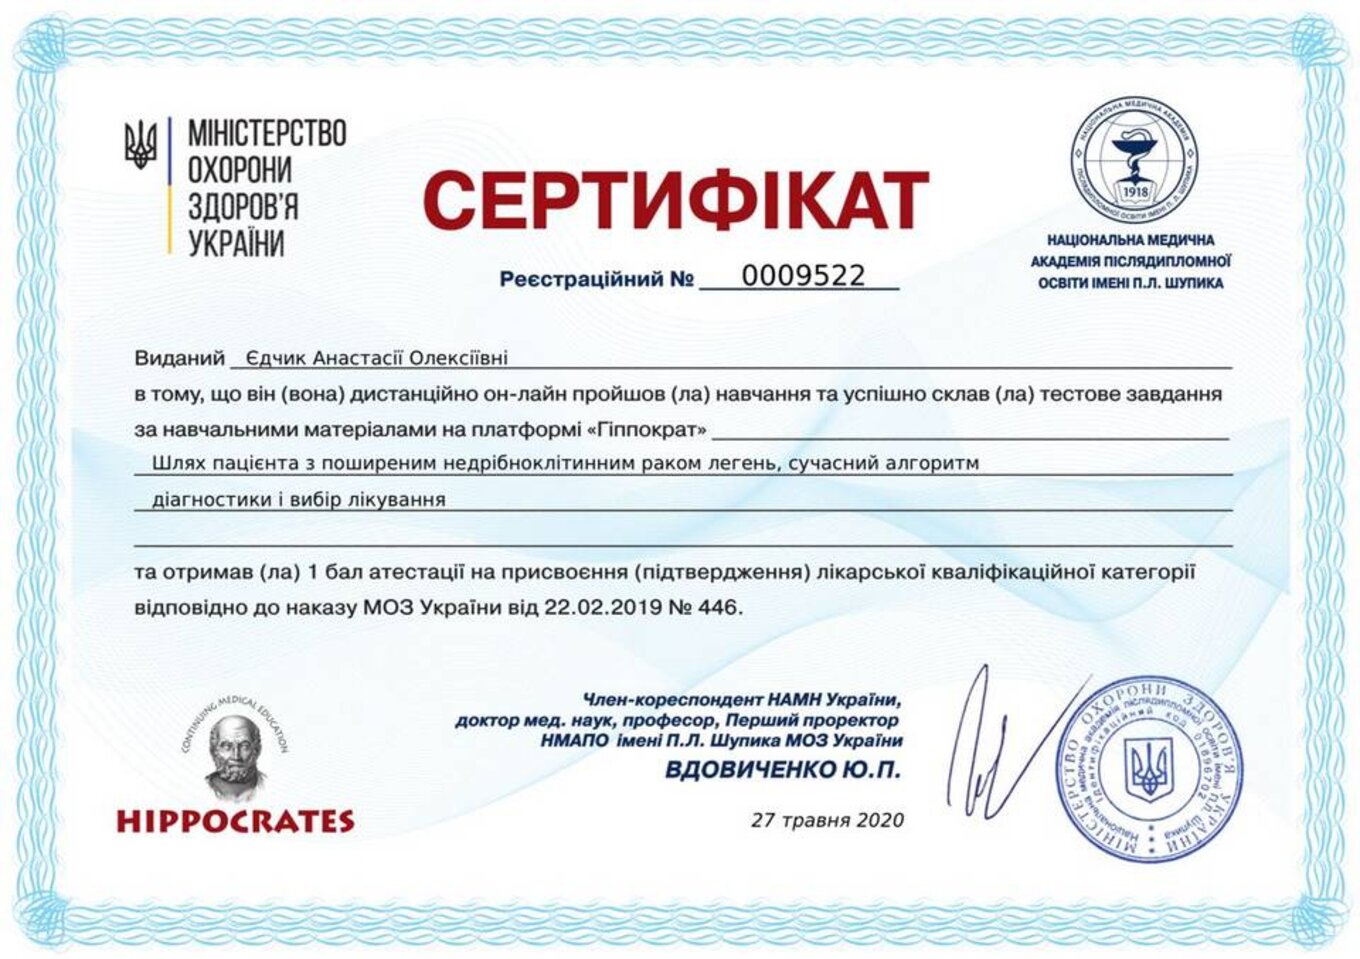 certificates/yedchik-anastasiya-oleksiyivna/erc-edchik-cert-28.jpg